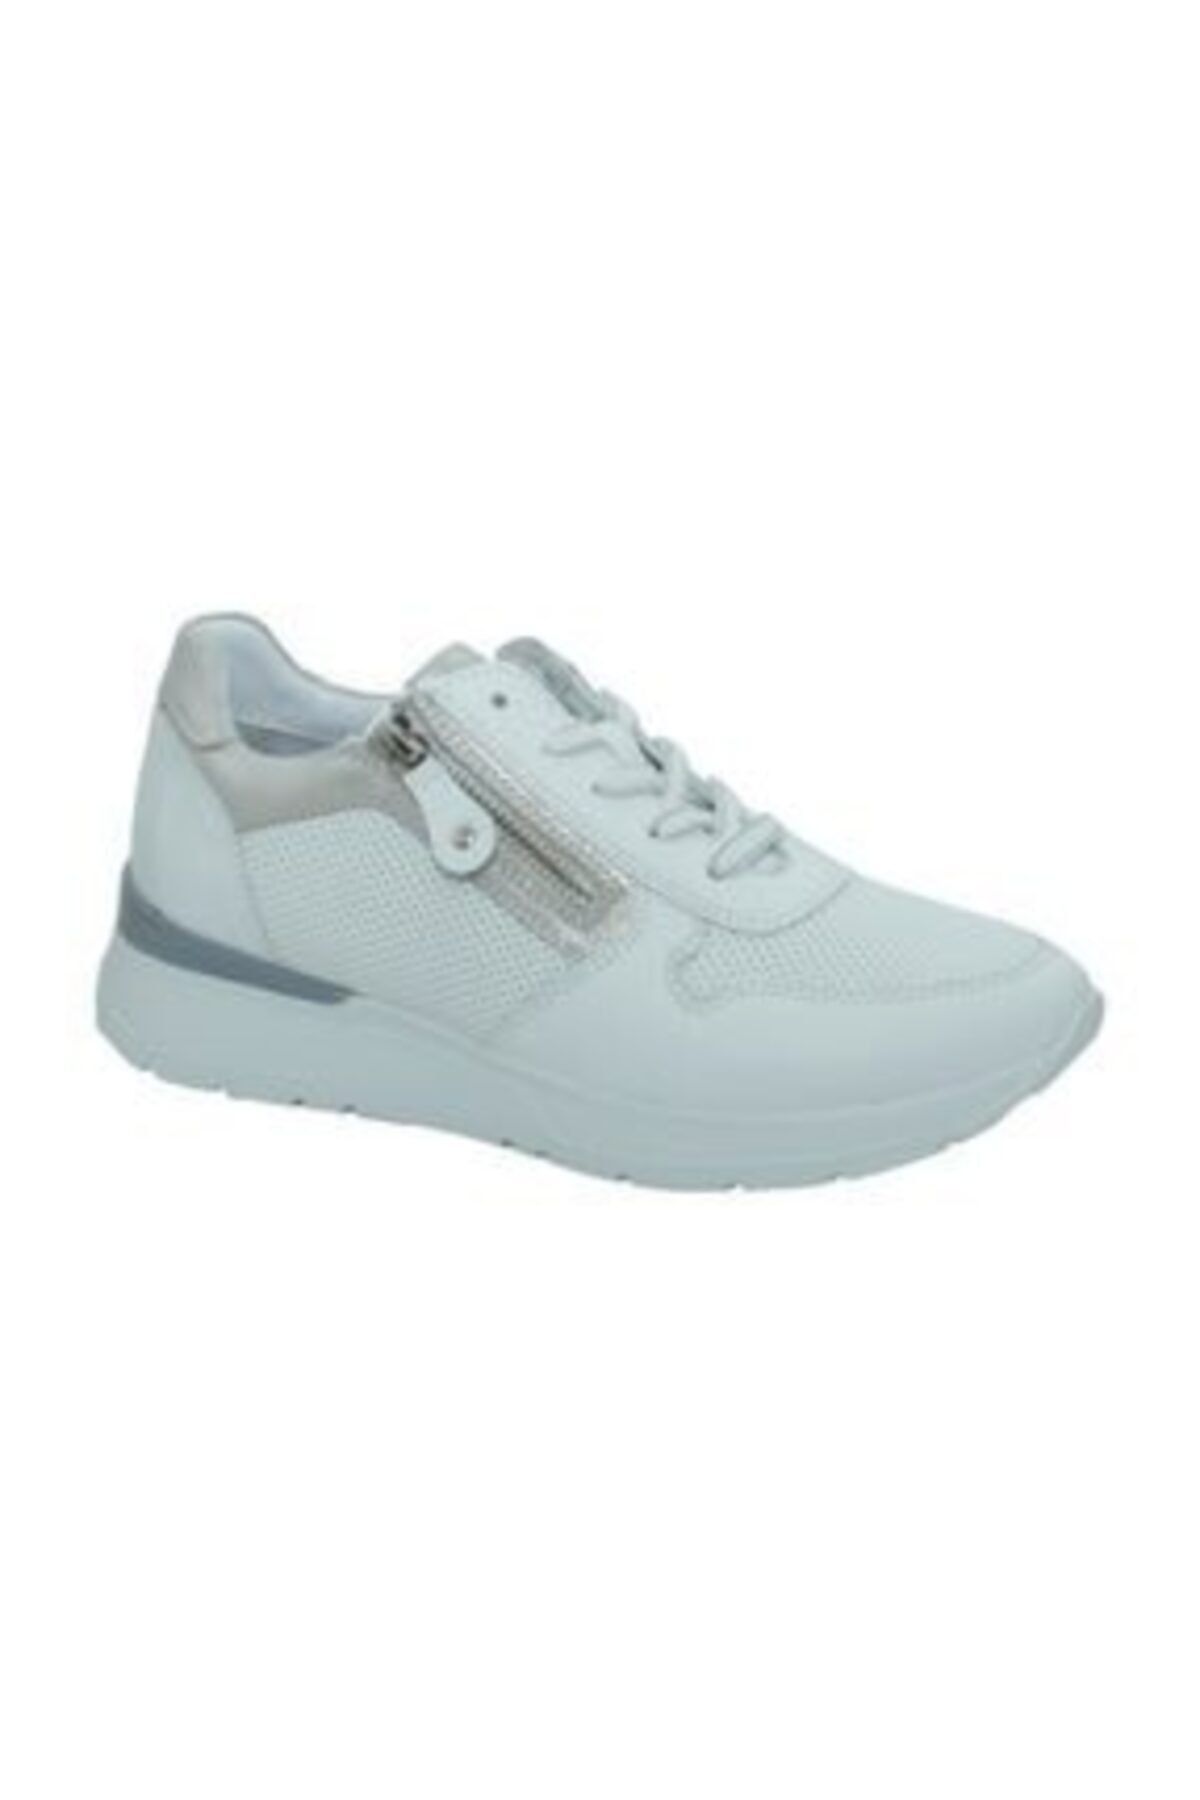 Greyder 29761 Sneaker Kadın Ayakkabı